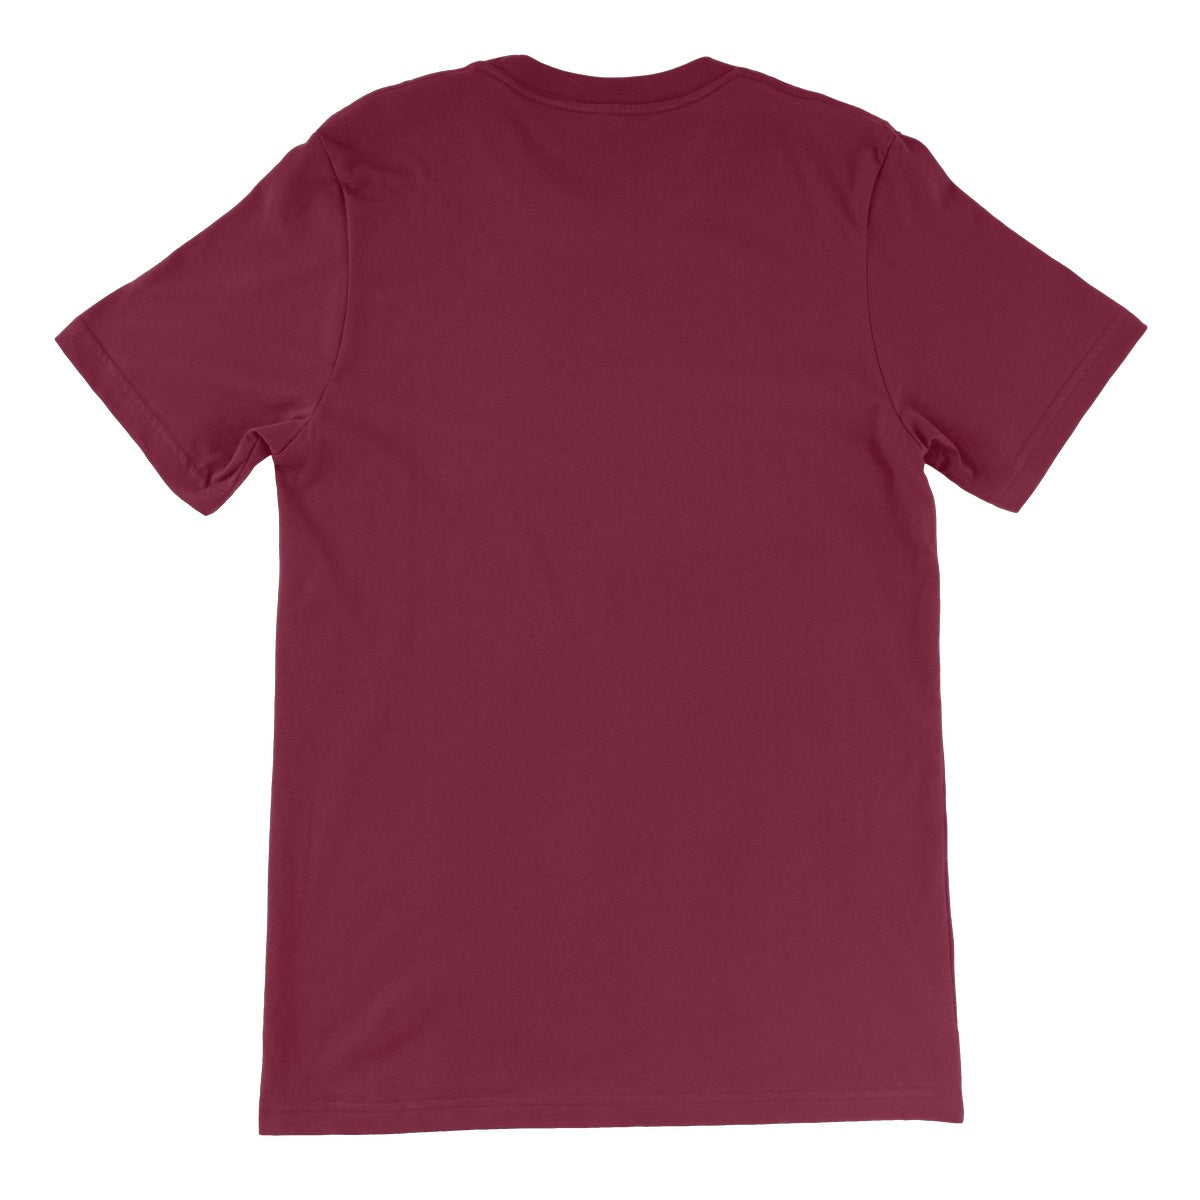 Loxodromes, Twilight Unisex Short Sleeve T-Shirt